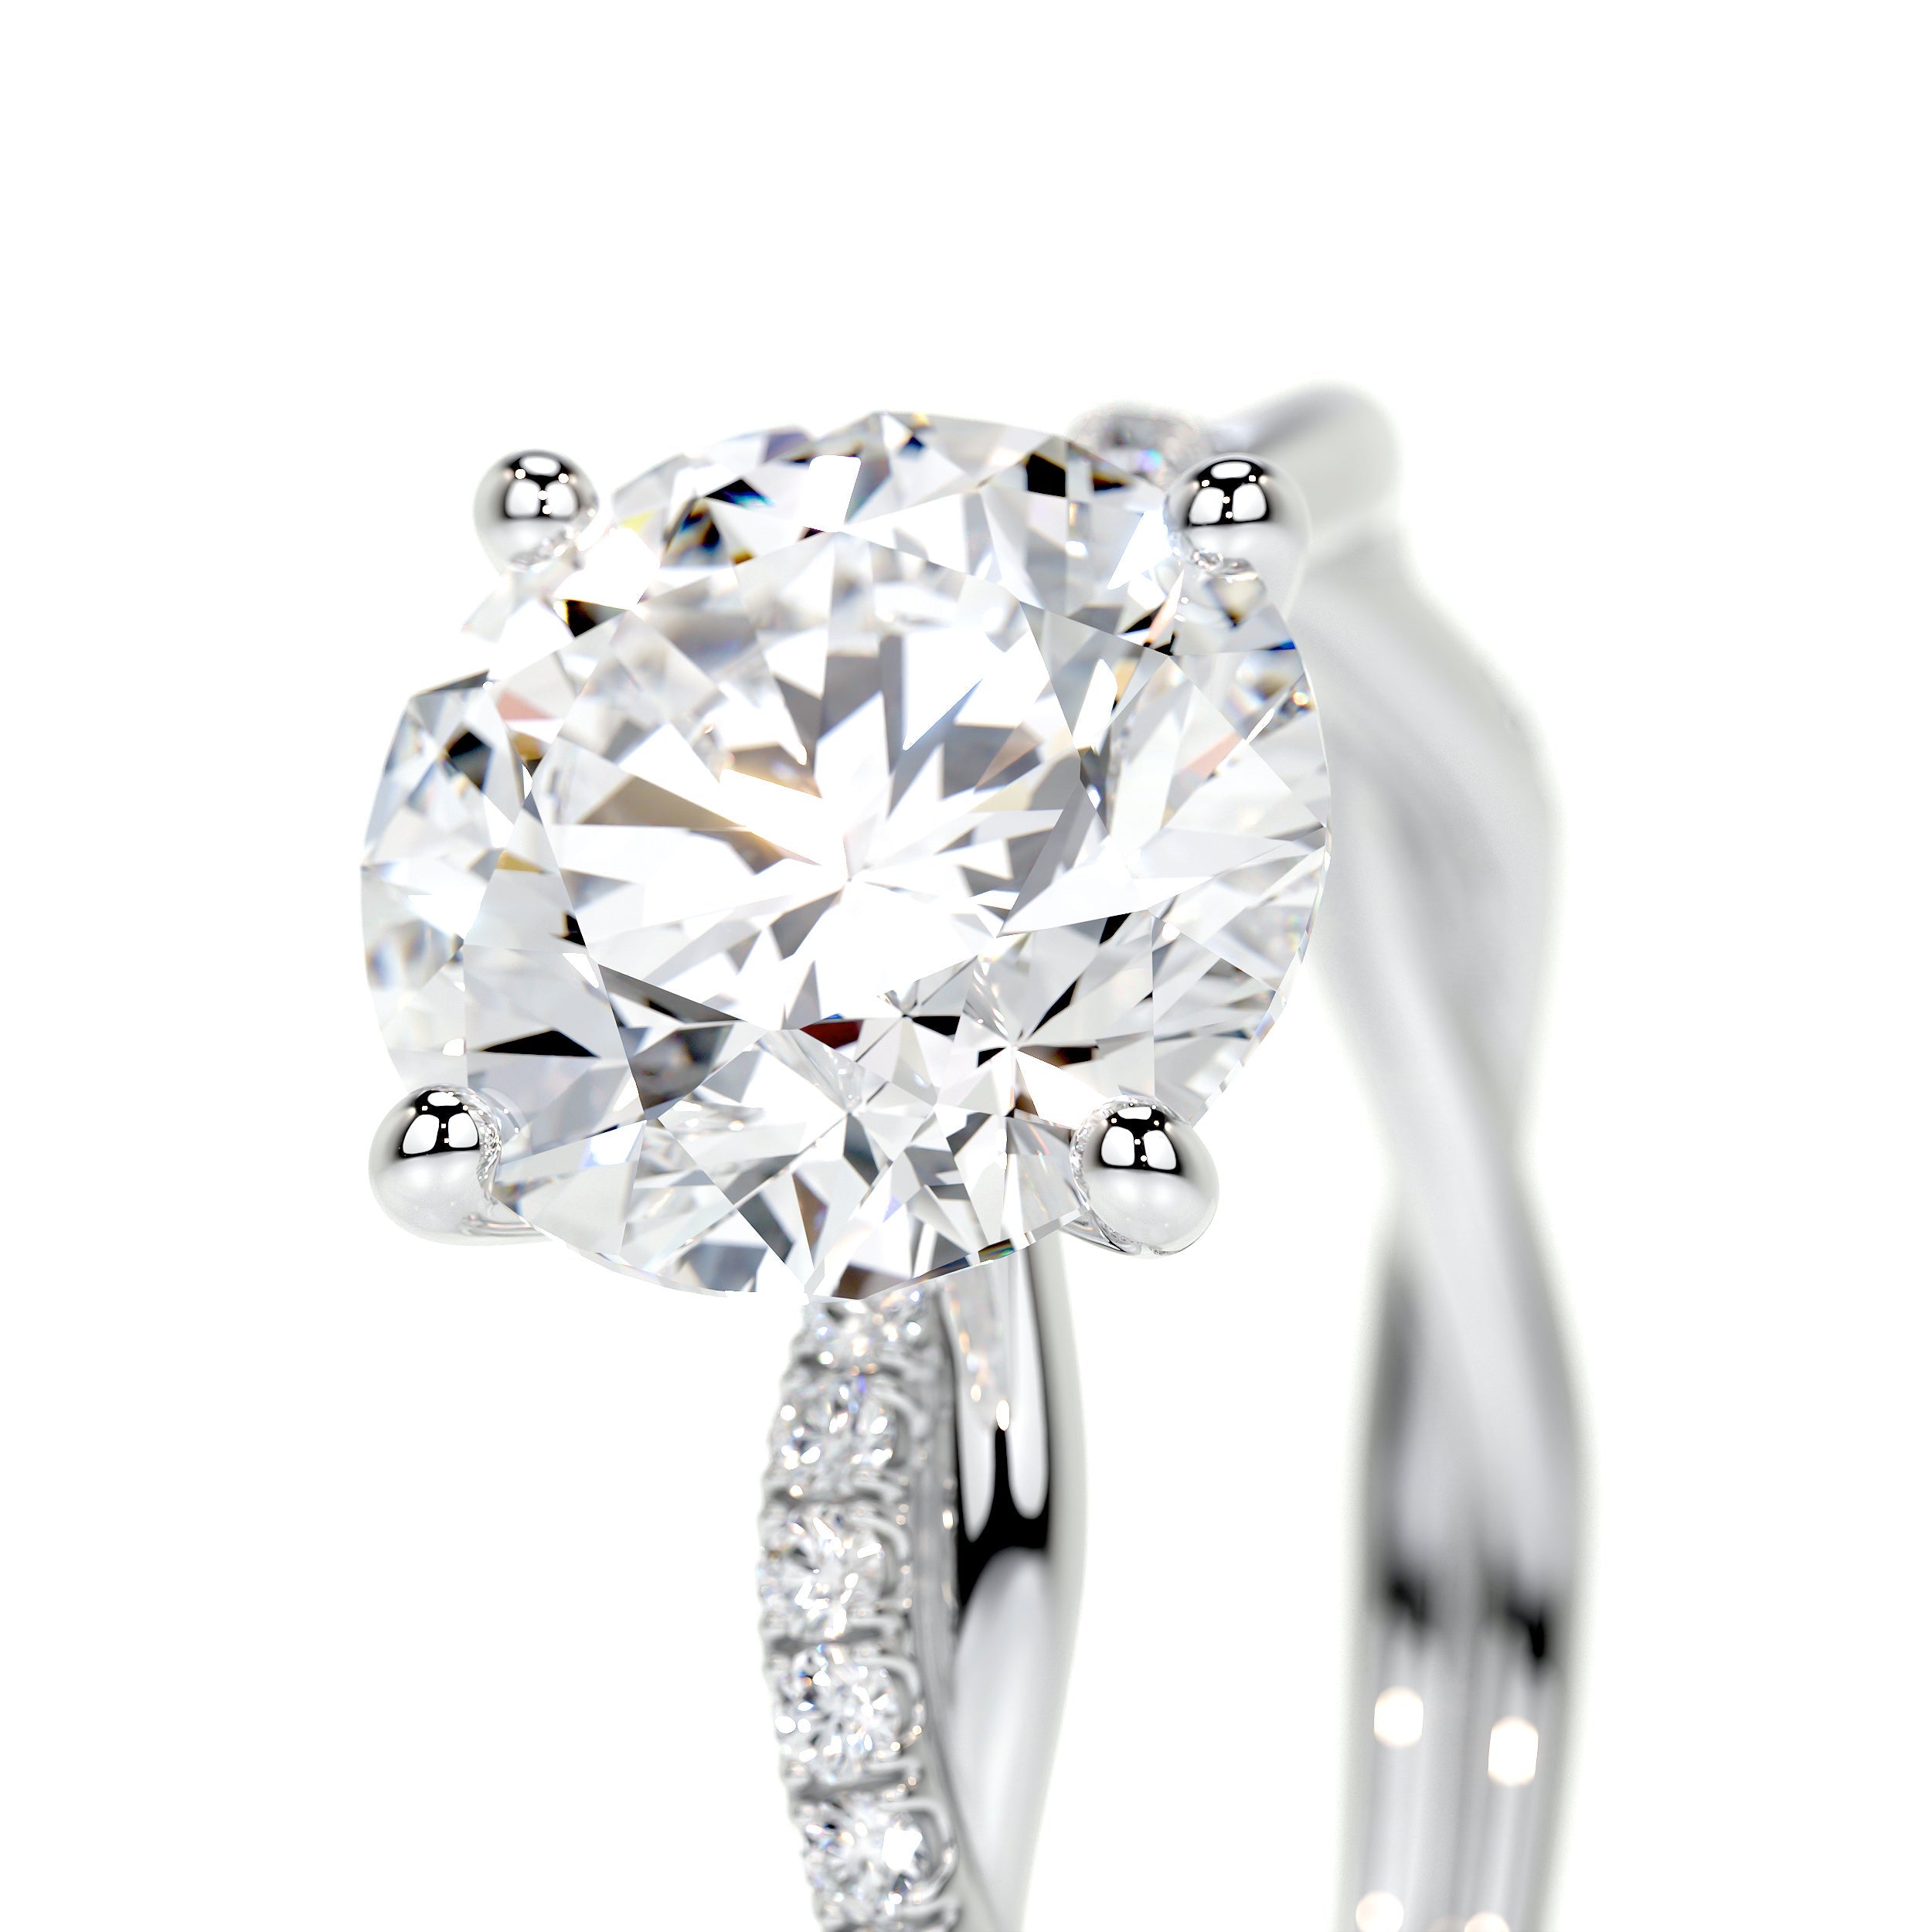 Crystal Lab Grown Diamond Ring   (1.8 Carat) -18K White Gold